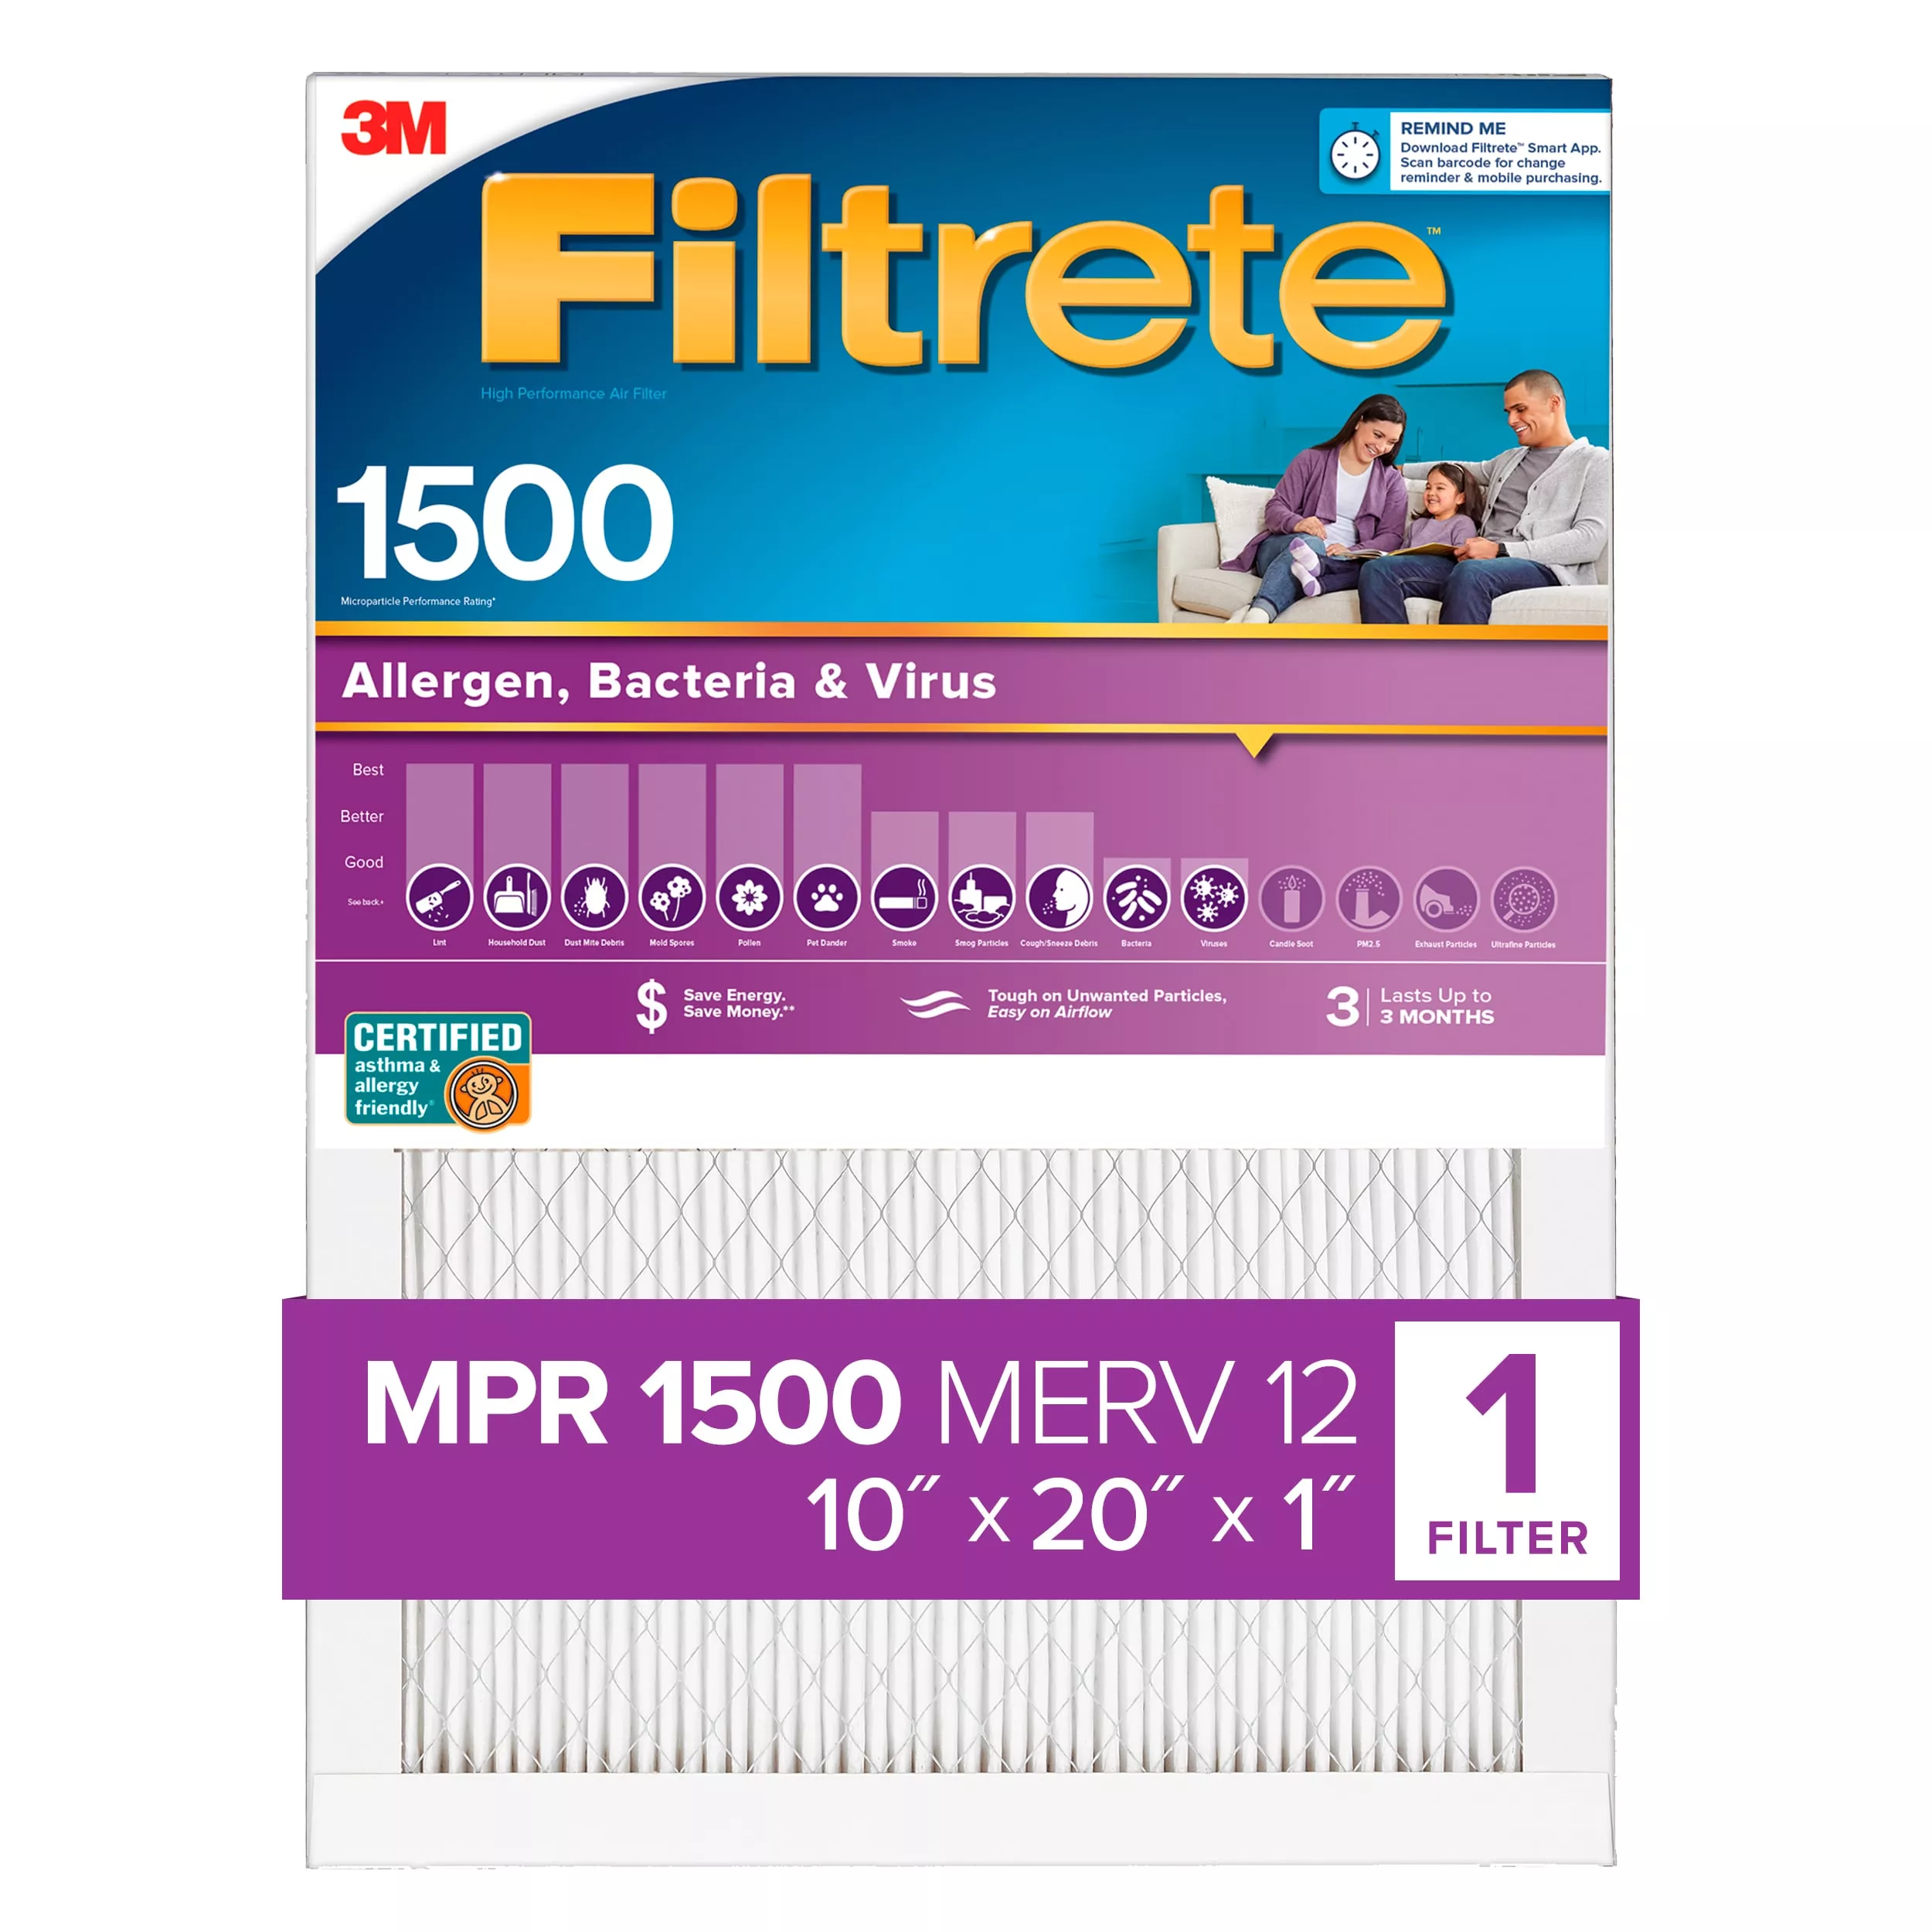 Filtrete™ High Performance Air Filter 1500 MPR 2007DC-4, 10 in x 20 in x 1 in (25.4 cm x 50.8 cm x 2.5 cm)